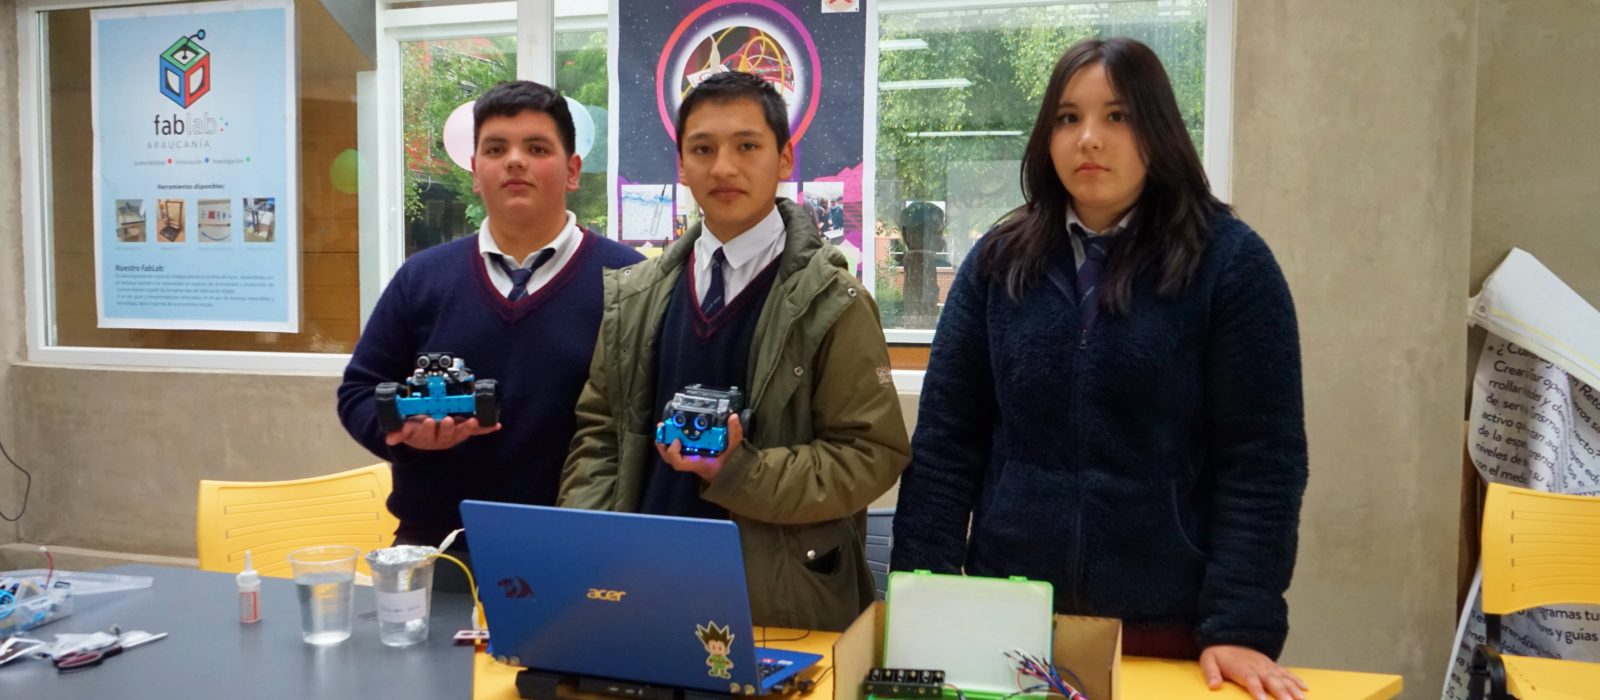 Primera Feria de Innovación Tecnológica conecta a colegios TP en el sur de Chile